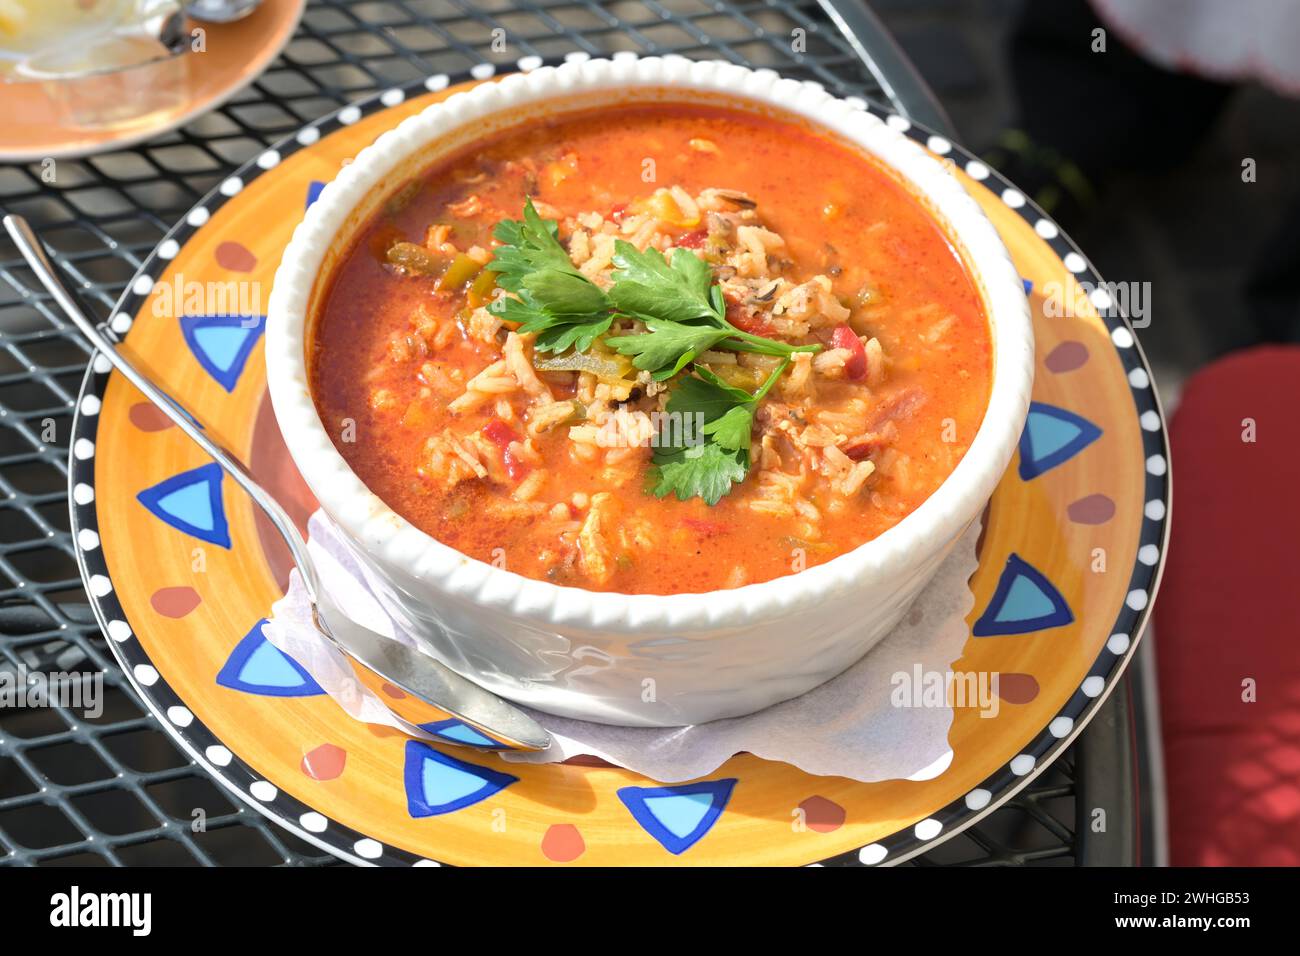 Cajun One Pot Jambalaya Suppe mit Huhn, Garnelen, Wurst, Gemüse und Reis, kreolisches Gericht in einer Schüssel auf einem bunten Teller Stockfoto